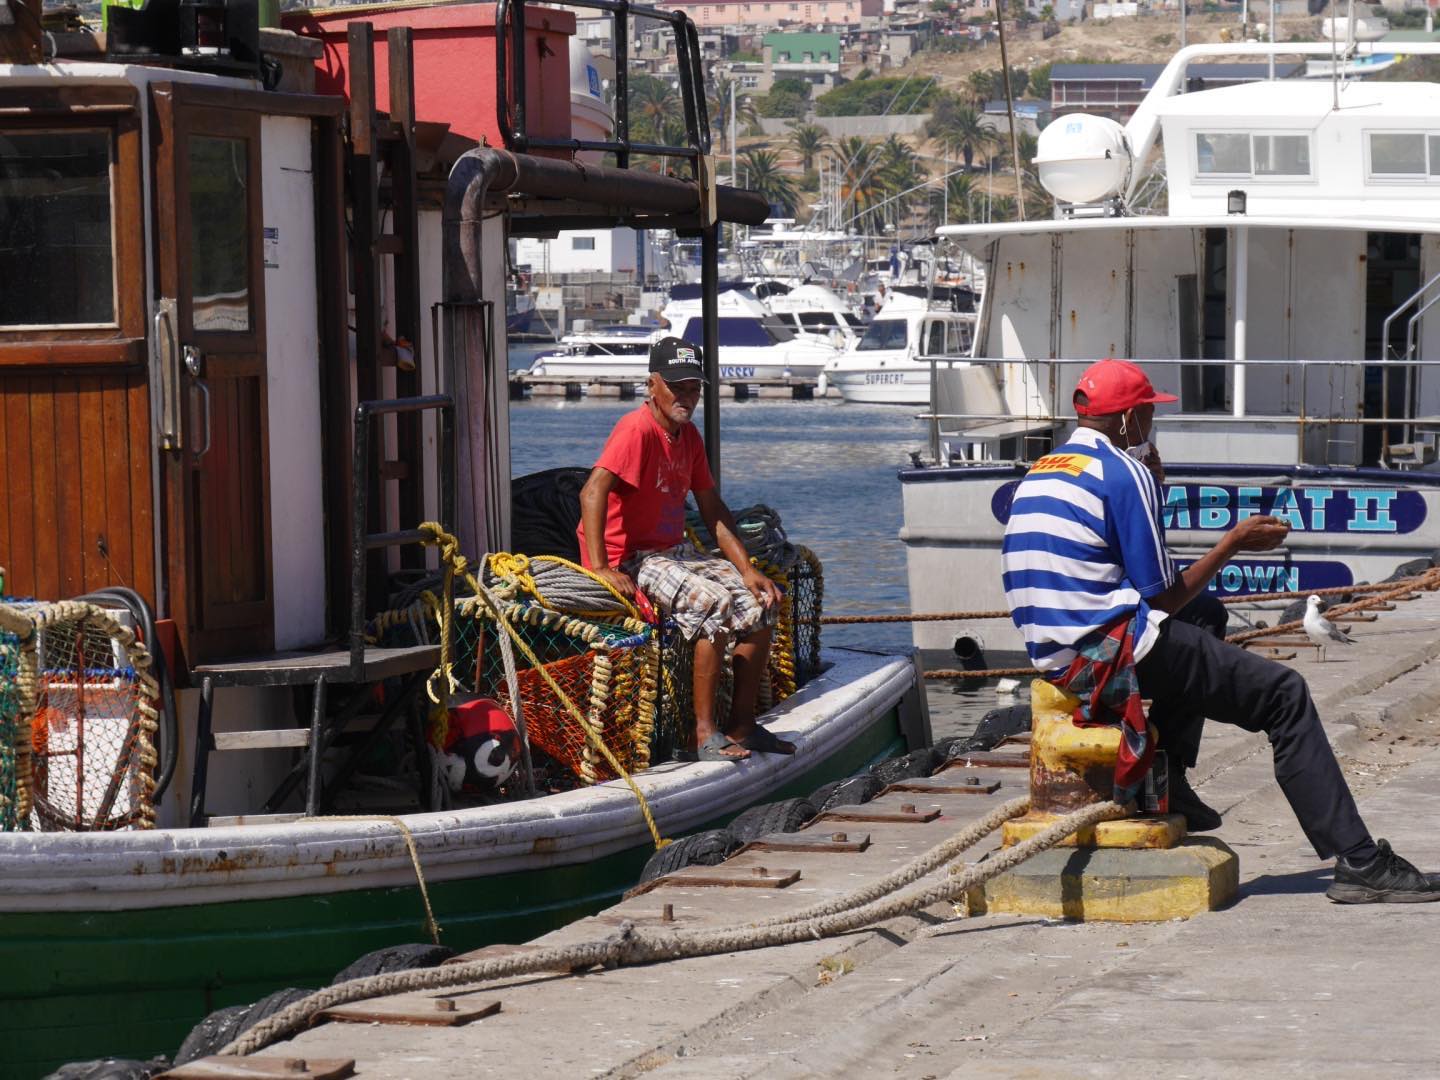 Les pêcheurs dans le port de pêche de Hout Bay à Mariner’s Warf. #thetravelcafecpt #houtbay #southafrica #nofilter